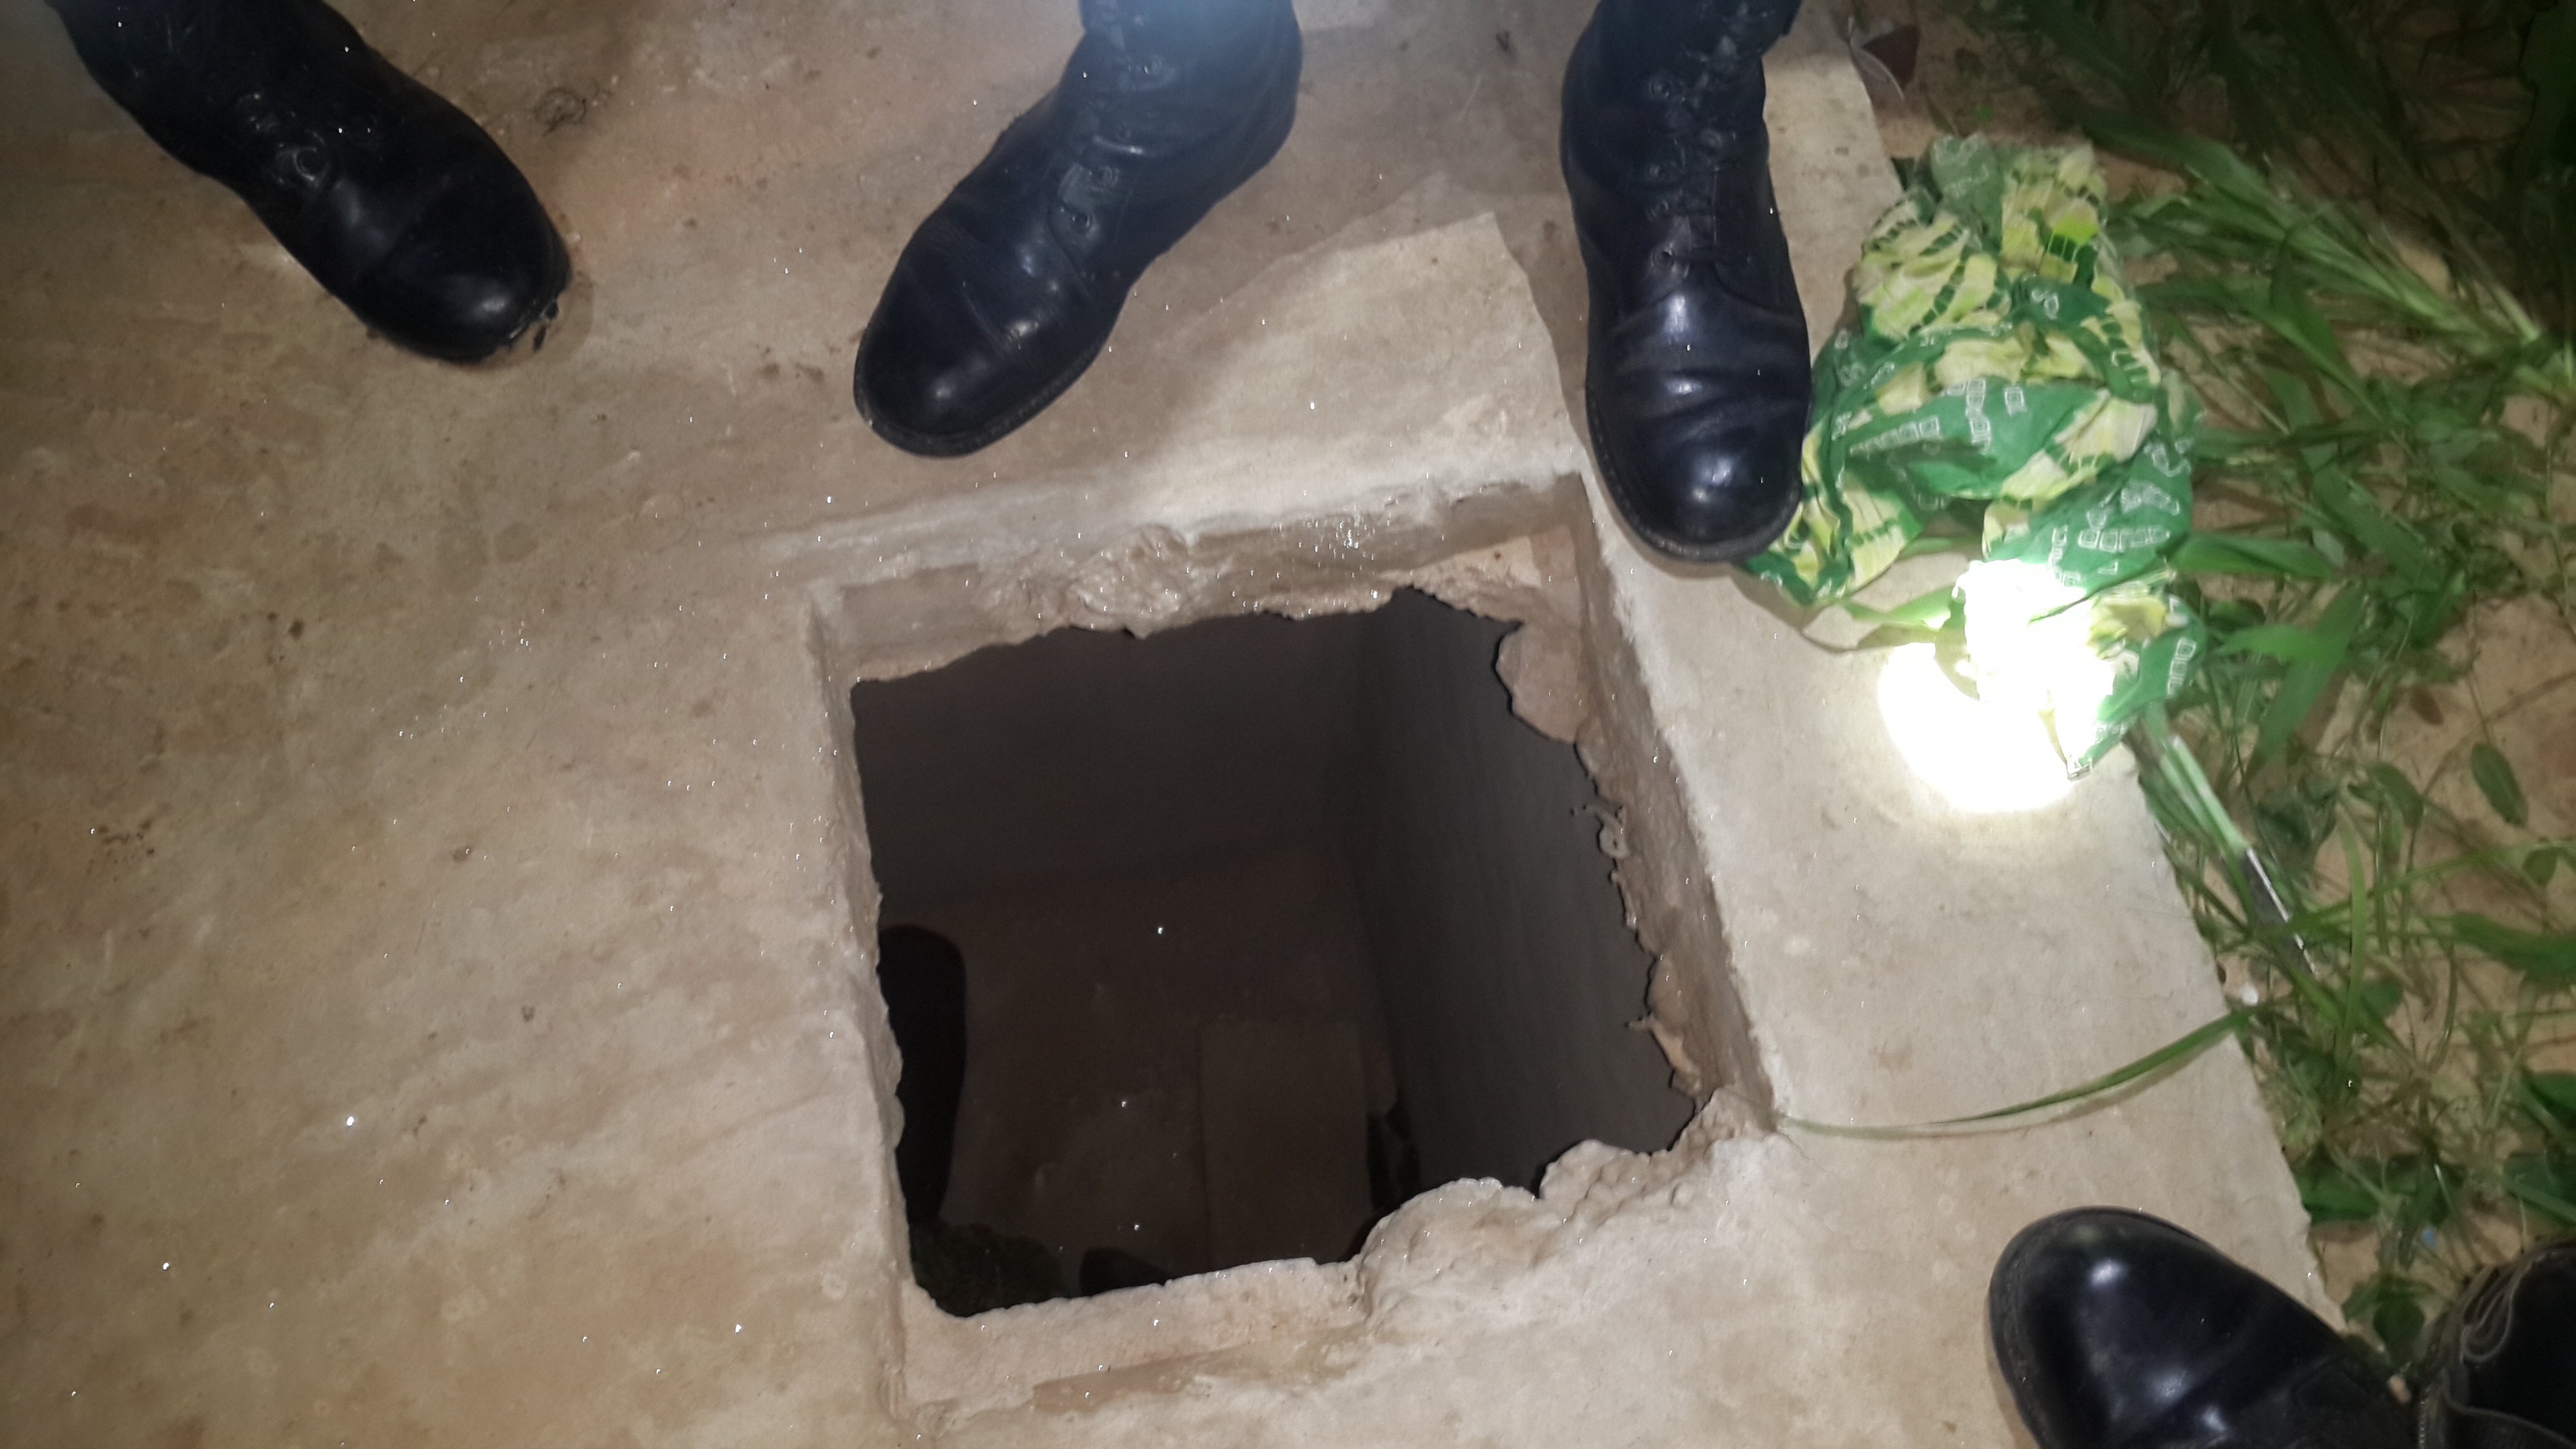 Tragédie à Diourbel : Décès d'un enfant de 2 ans dans une fosse septique creusée par son oncle